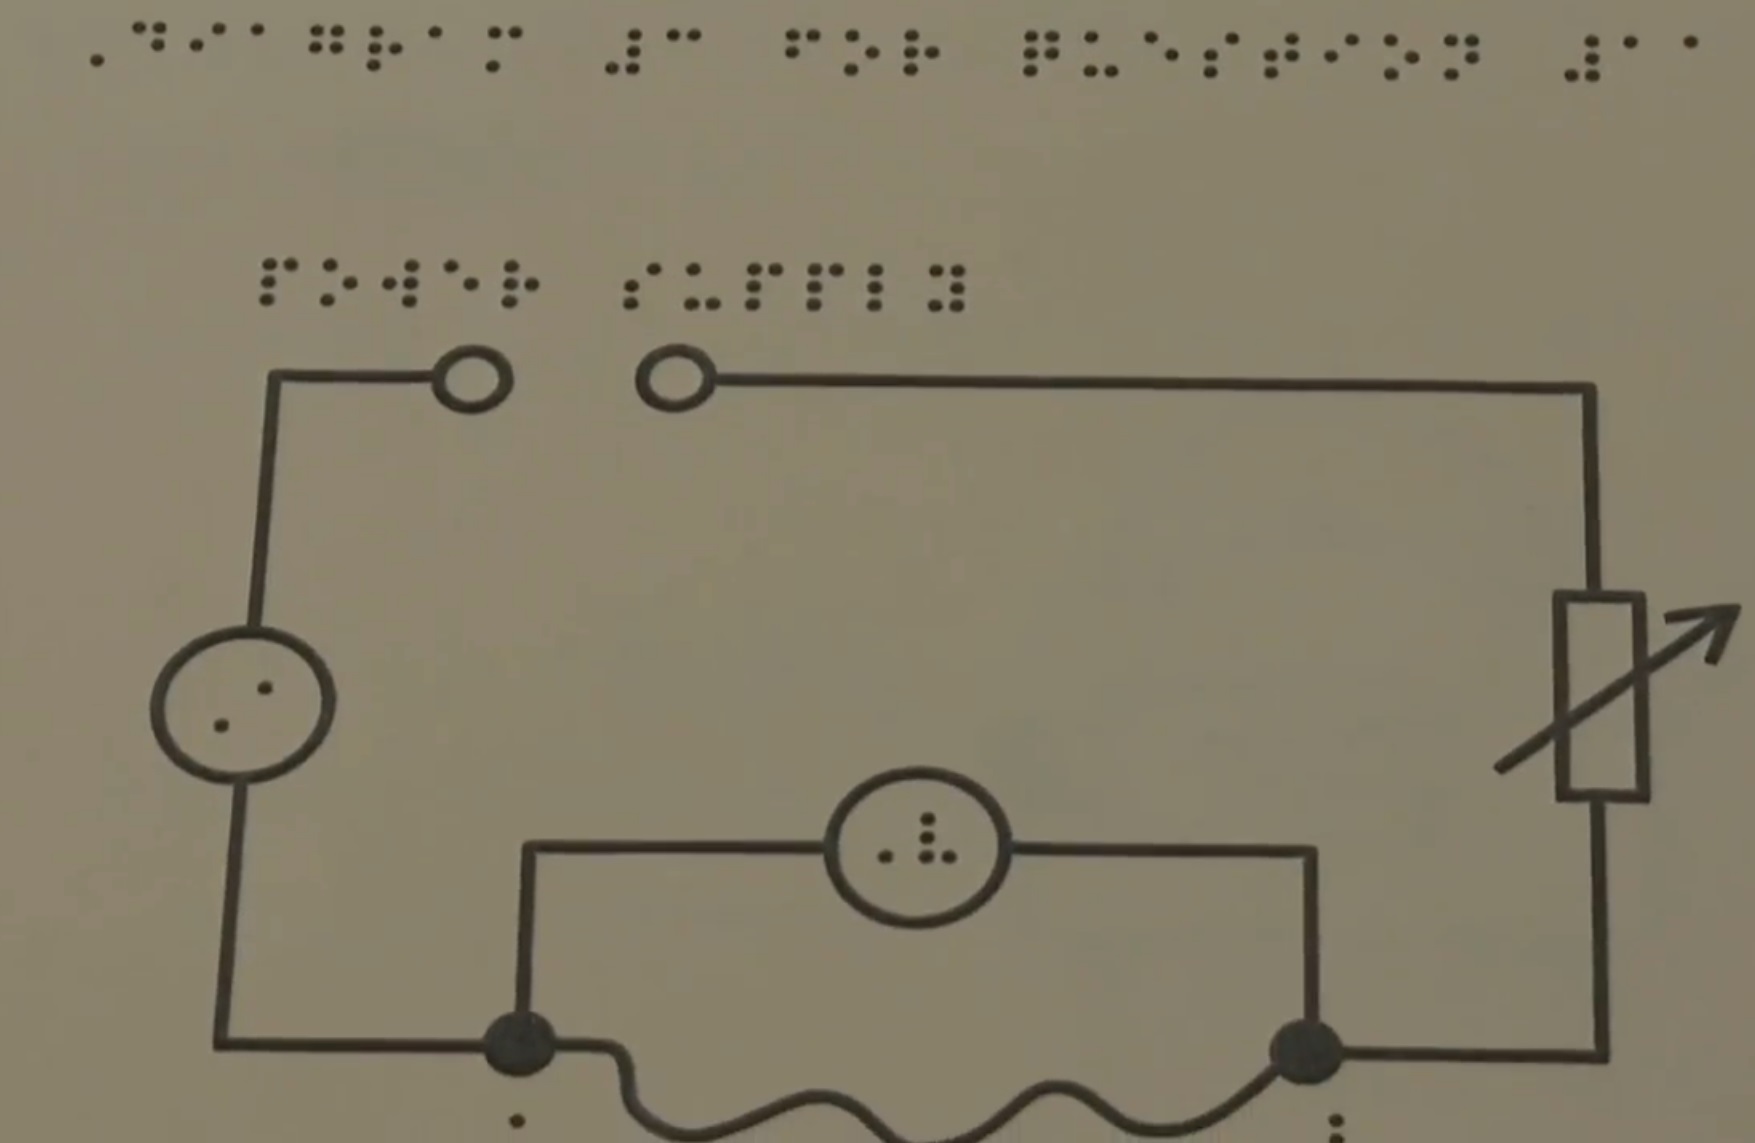 modified braille diagram